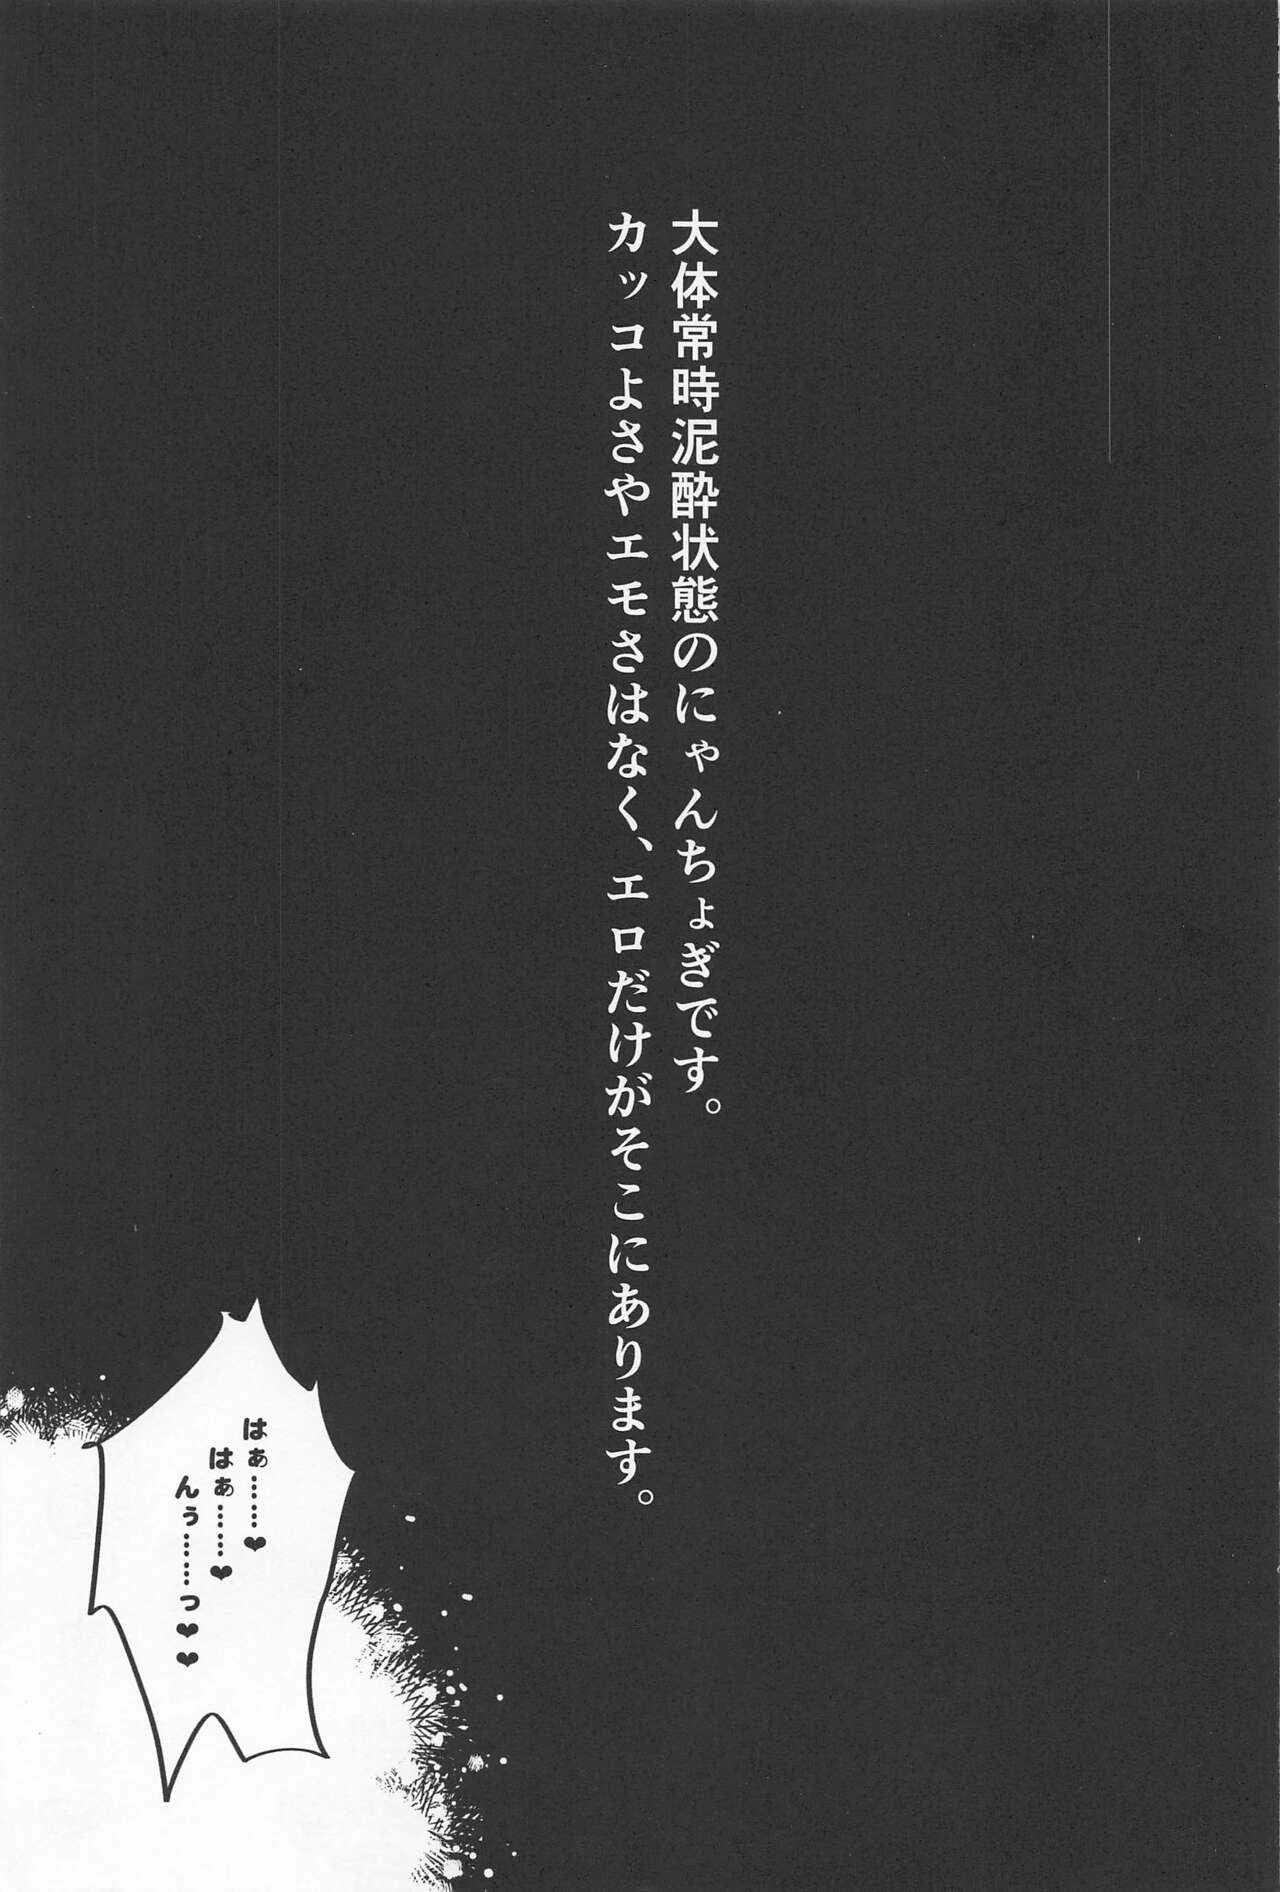 Three Some Deisui Janken SEX Sanban Shoubu Nansen Ichimonji vs Yamanbagiri Chougi - Touken ranbu Sexcams - Page 2